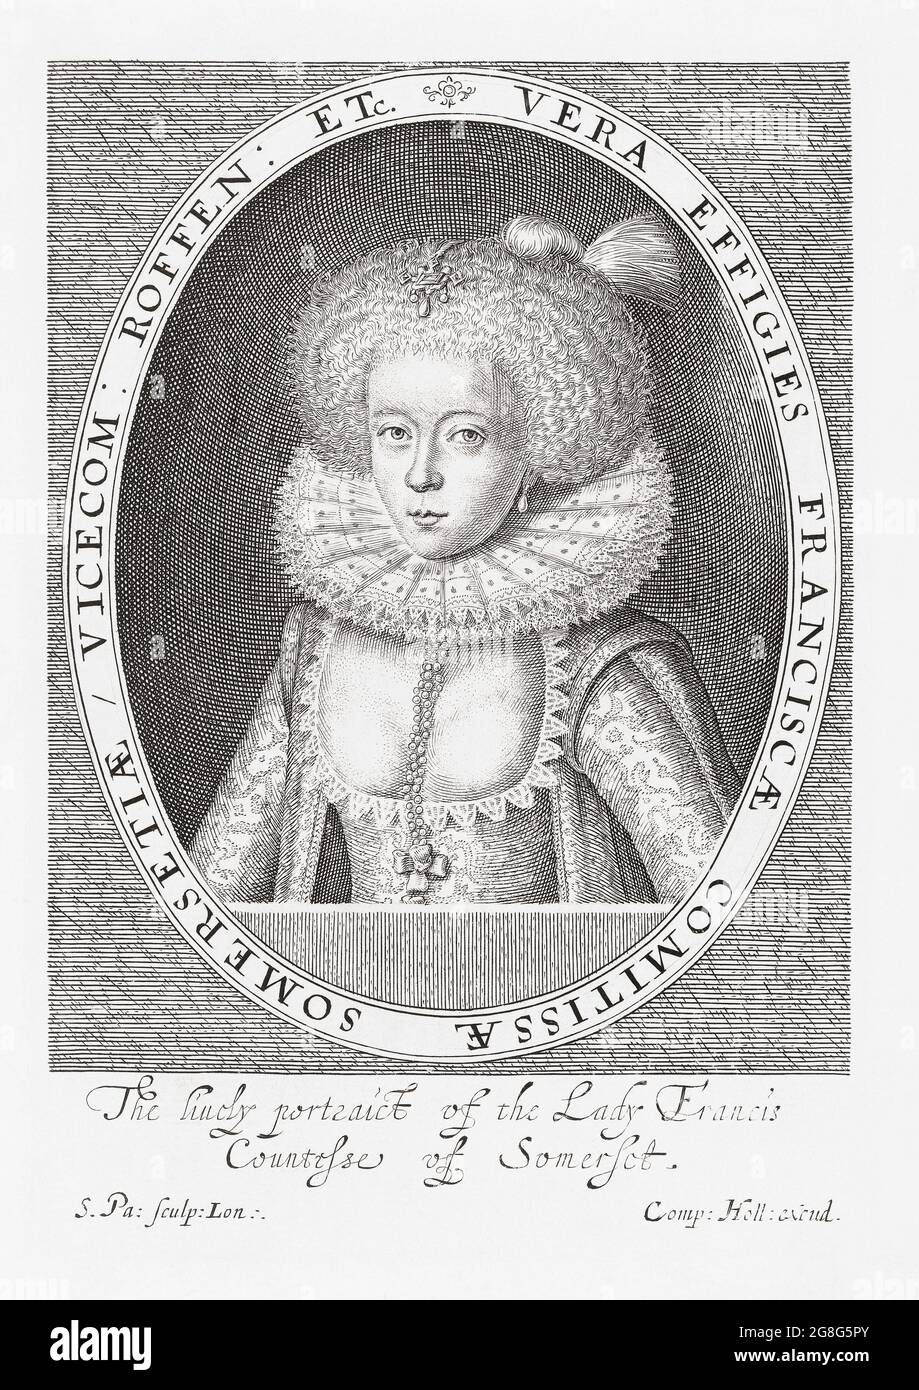 Frances Carr, Gräfin von Somerset, 1590 - 1632. Die Gräfin und ihr Mann wurden in einem berühmten Skandal während der Regierungszeit von König James I. des Mordes schuldig gesprochen.nach einem Druck von Simon van de Passe aus dem frühen 17. Jahrhundert. Stockfoto